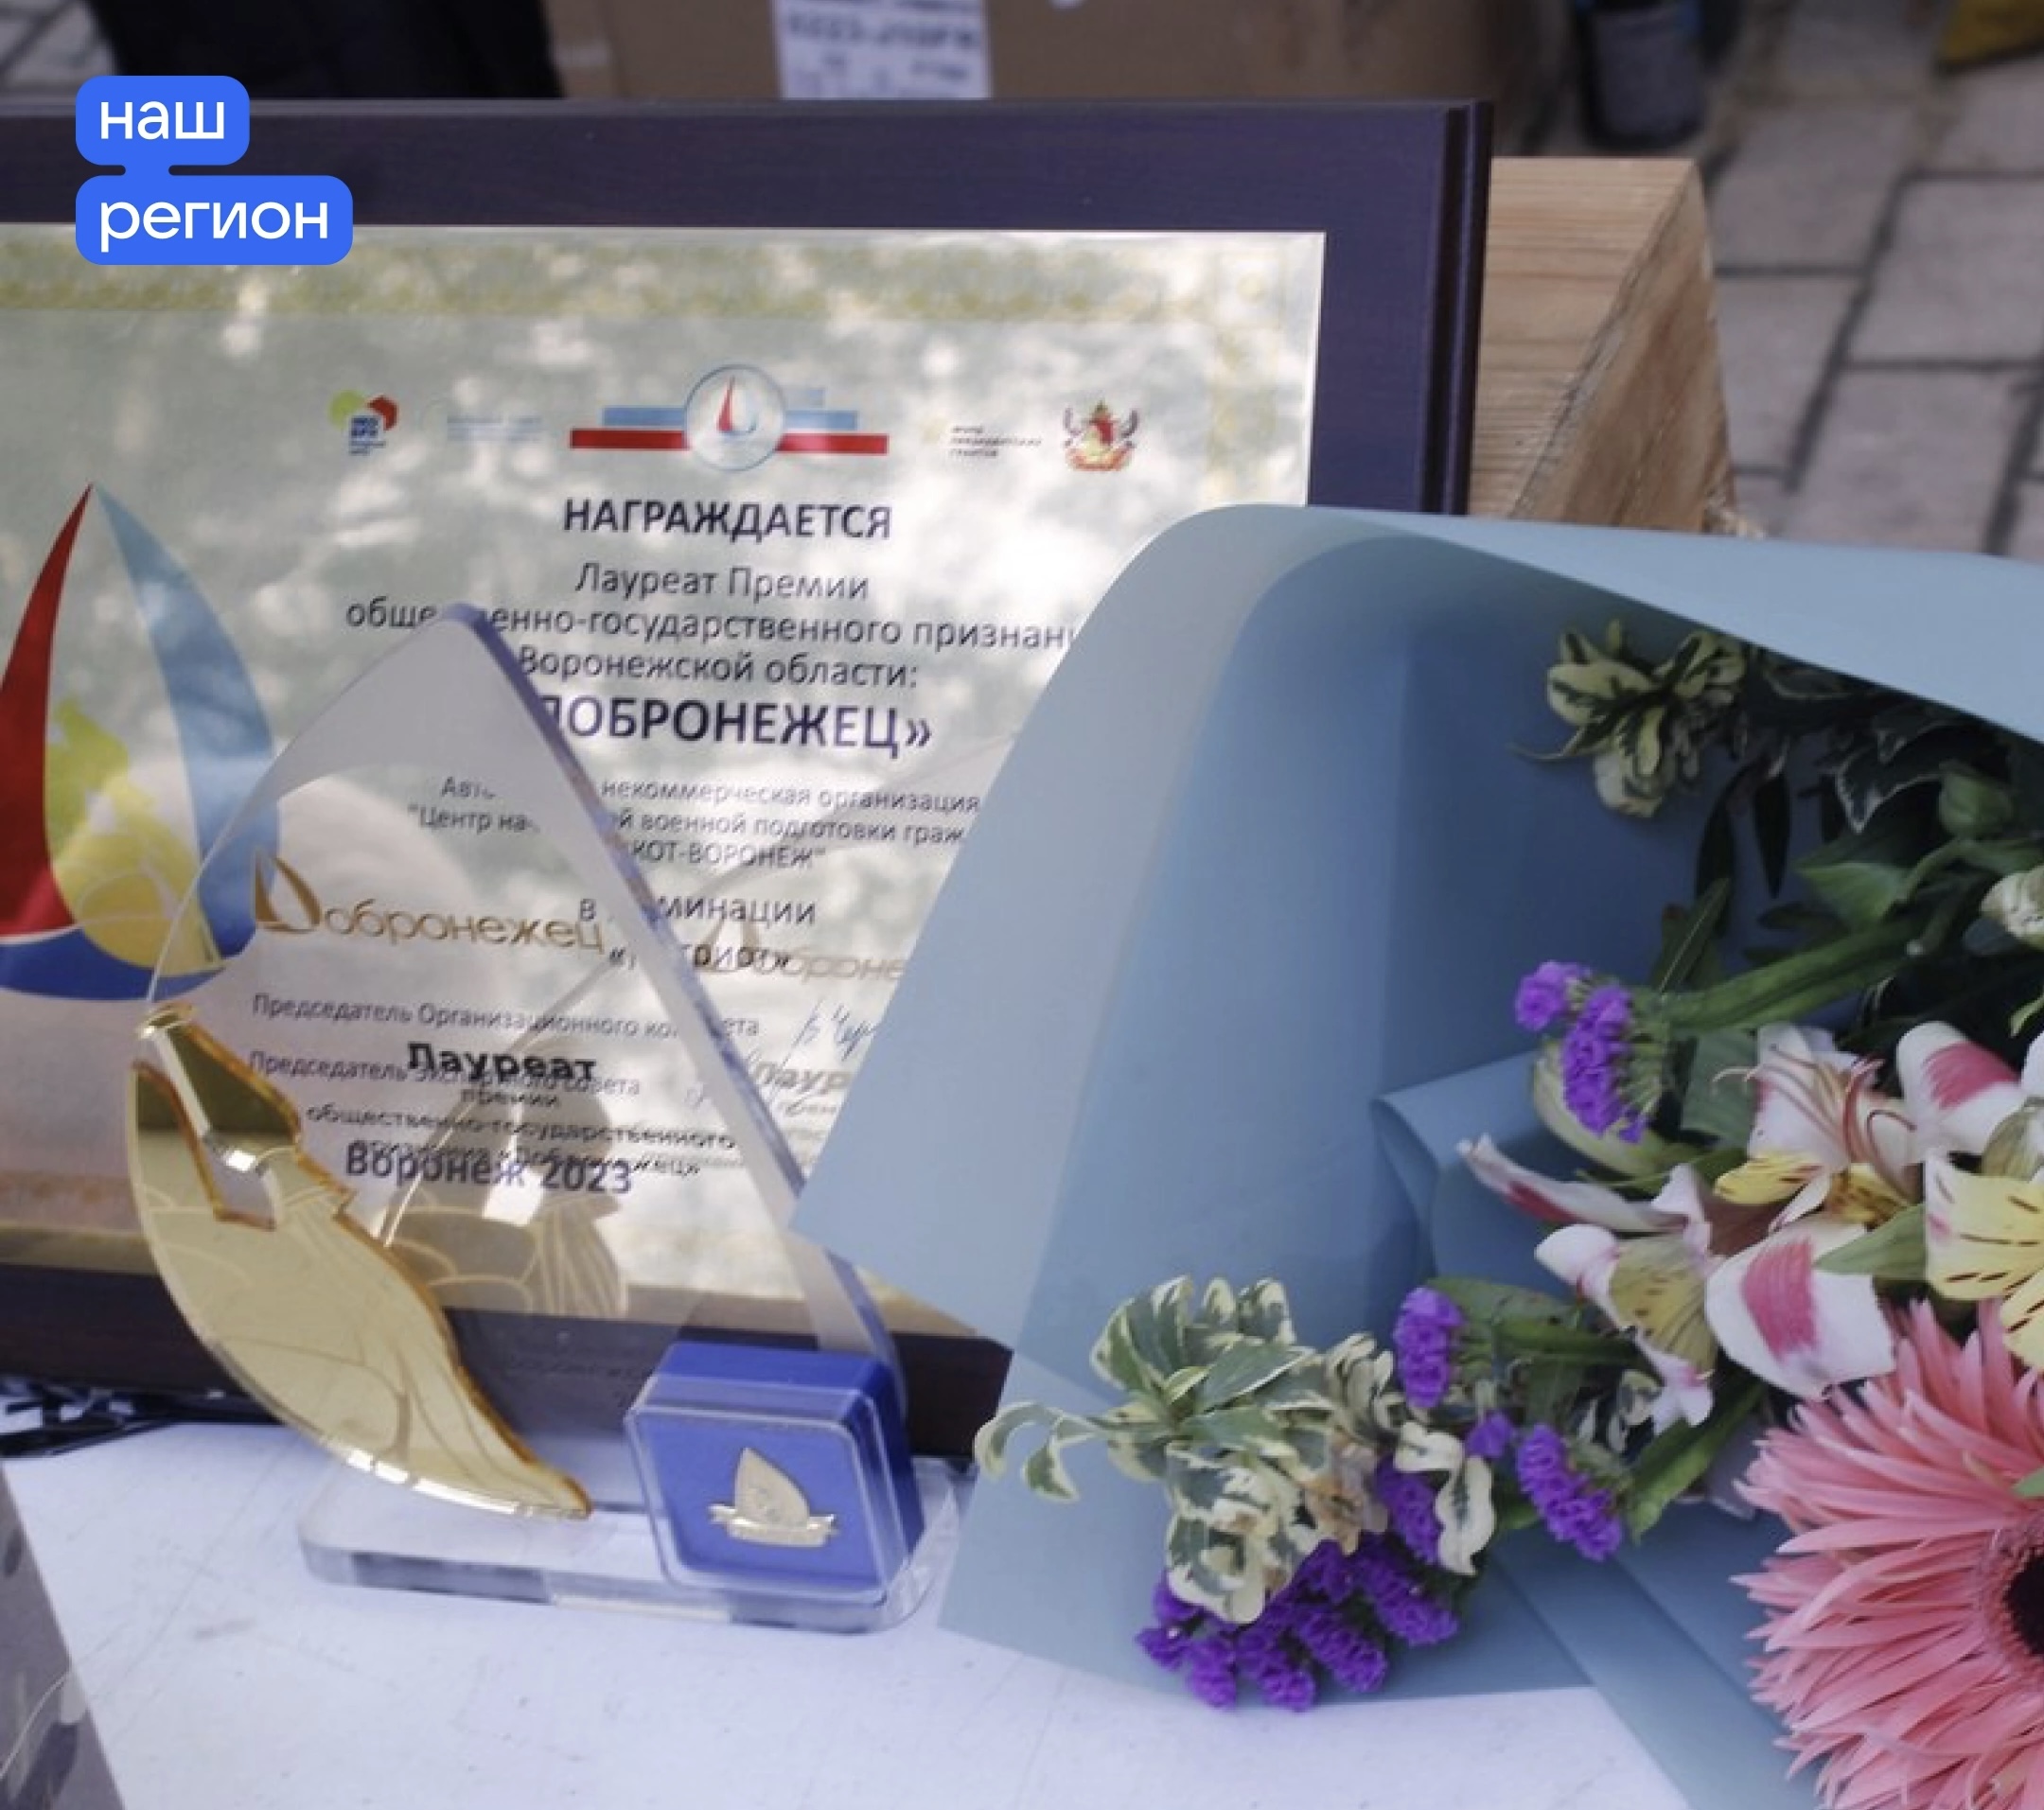 Конкурс «Добронежец» – ежегодно проводится в Воронежской области. Уже сейчас открылся прием заявок на премию общественно-государственного признания.